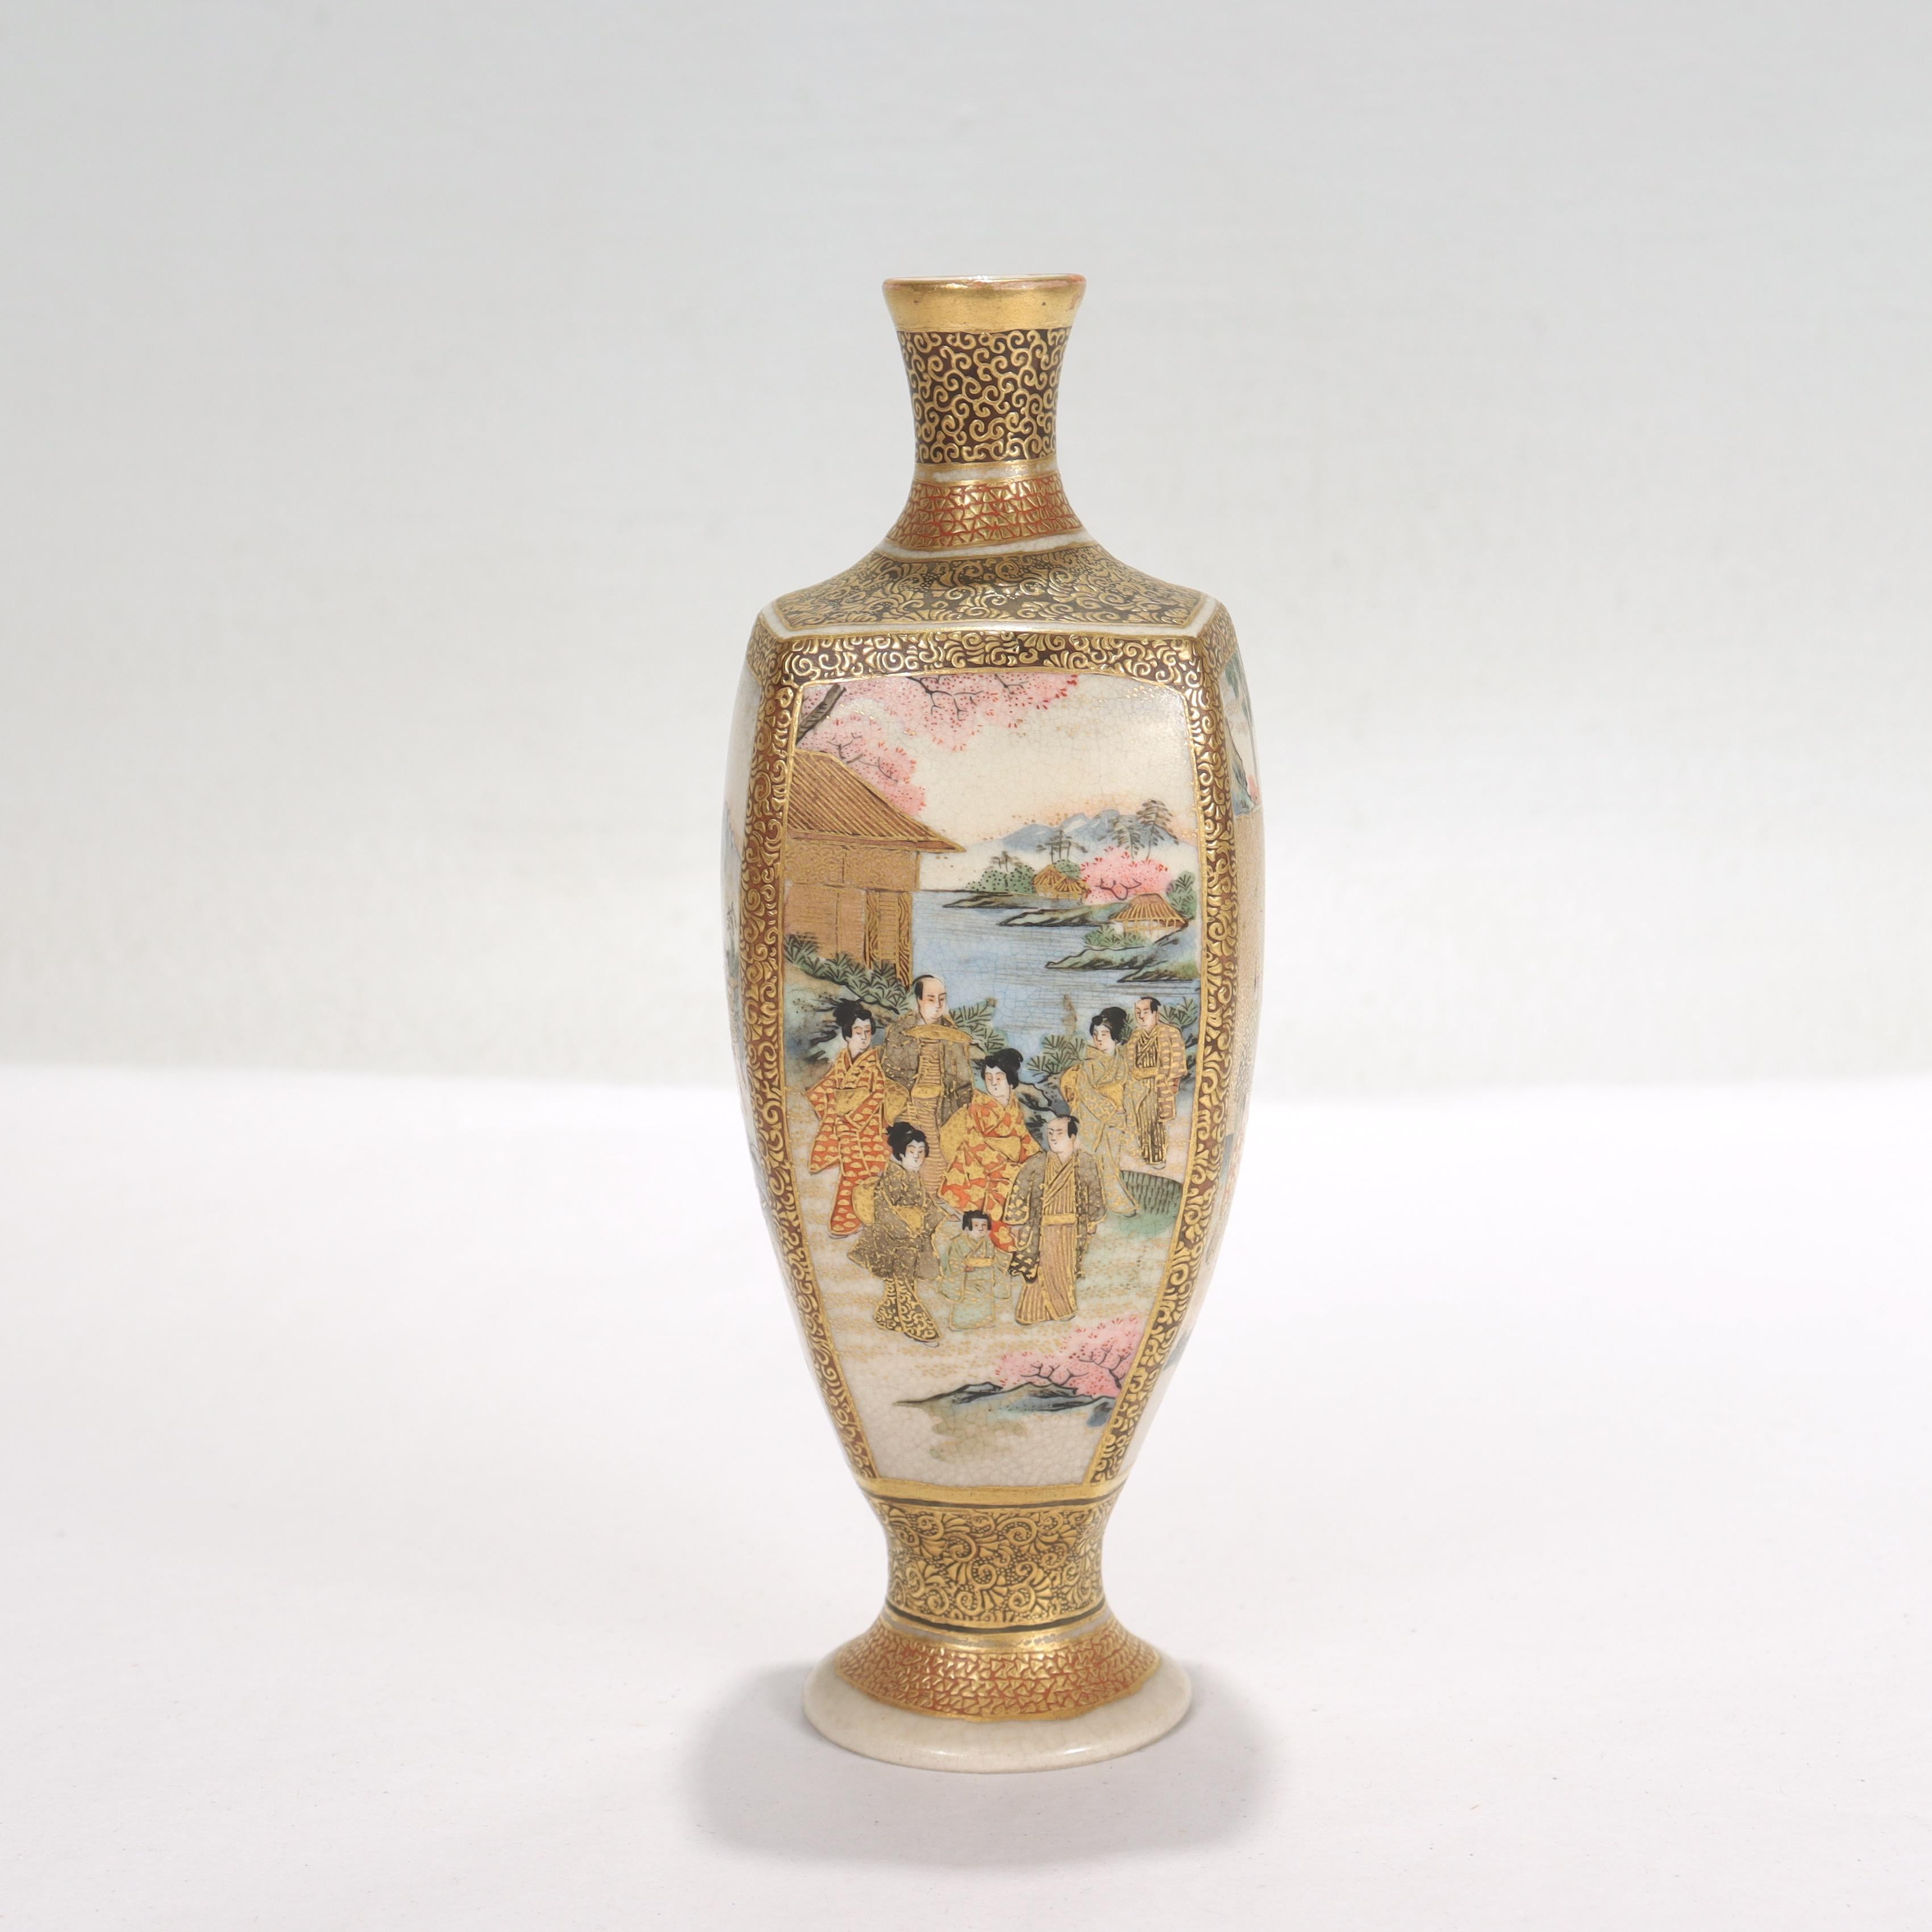 Eine feine antike japanische Satsuma-Porzellan-Miniaturvase.

Mit emaillierten Szenen auf allen Seiten und reichen erhabenen vergoldeten Highlights im ganzen. 

Auf dem Sockel sind ein Satsuma-Kreuz in einem Kreis und japanische Schriftzeichen